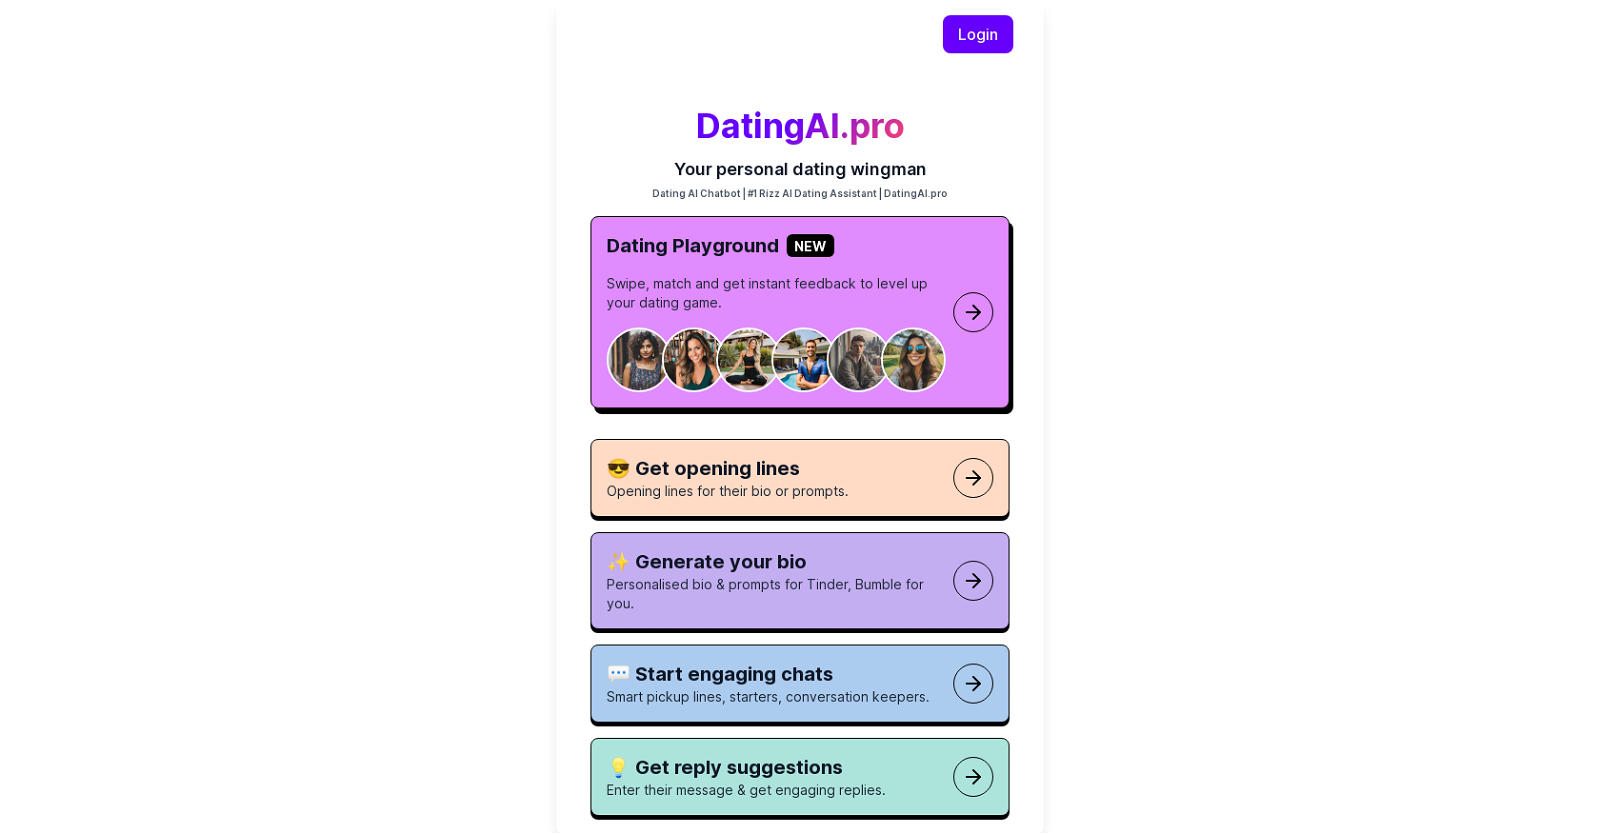 Dating AI Pro